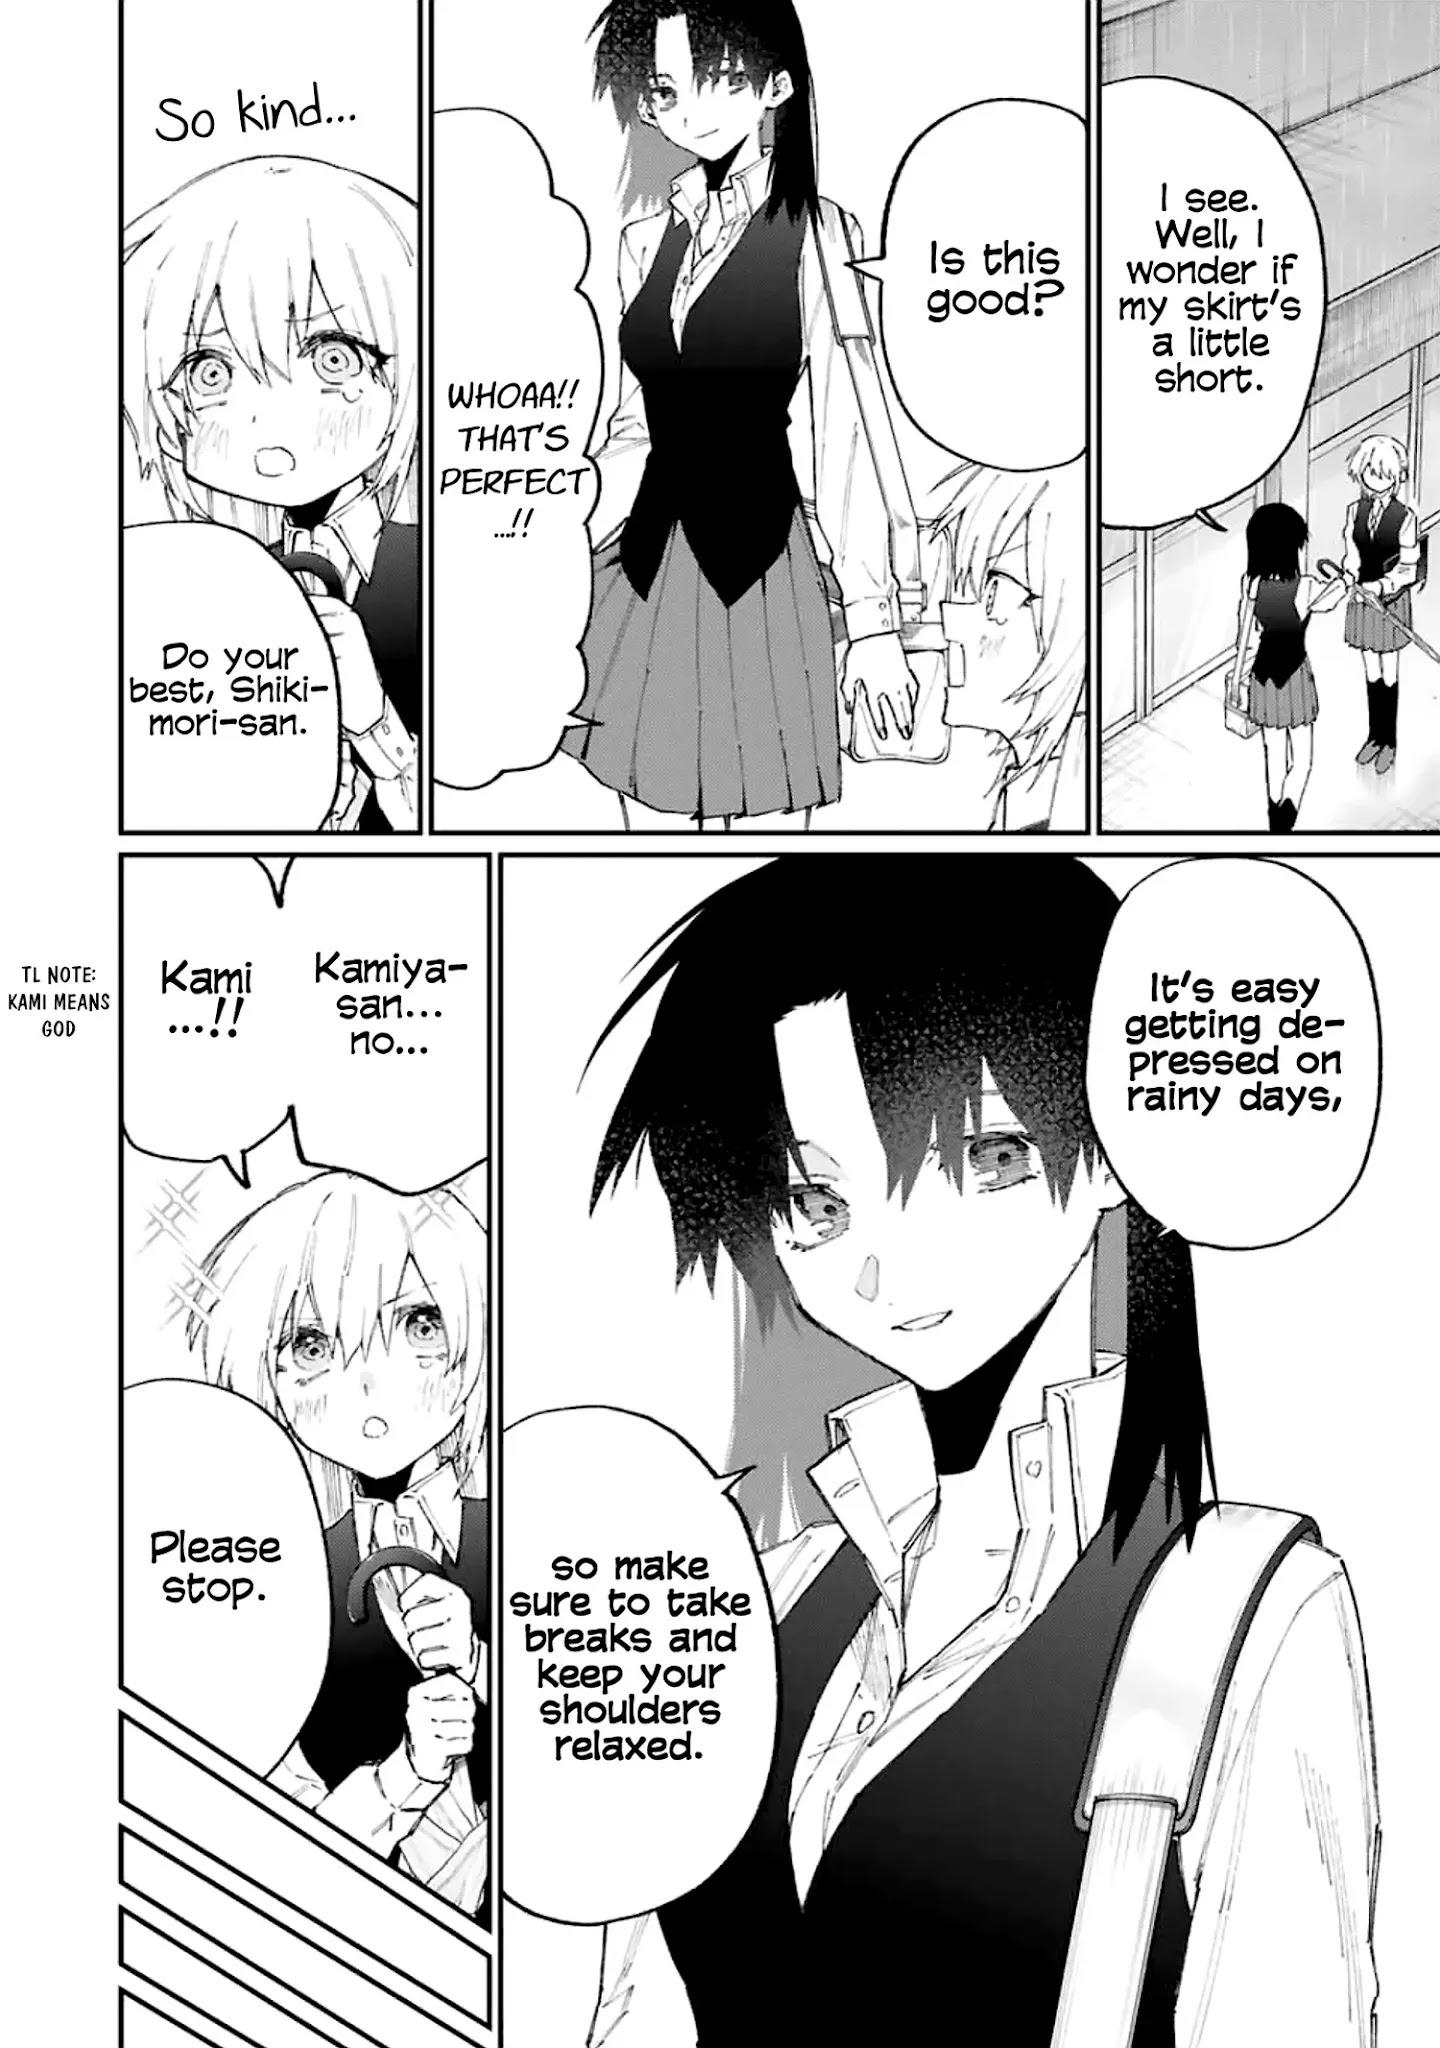 Shikimori's Not Just A Cutie Chapter 124 page 3 - Mangakakalots.com